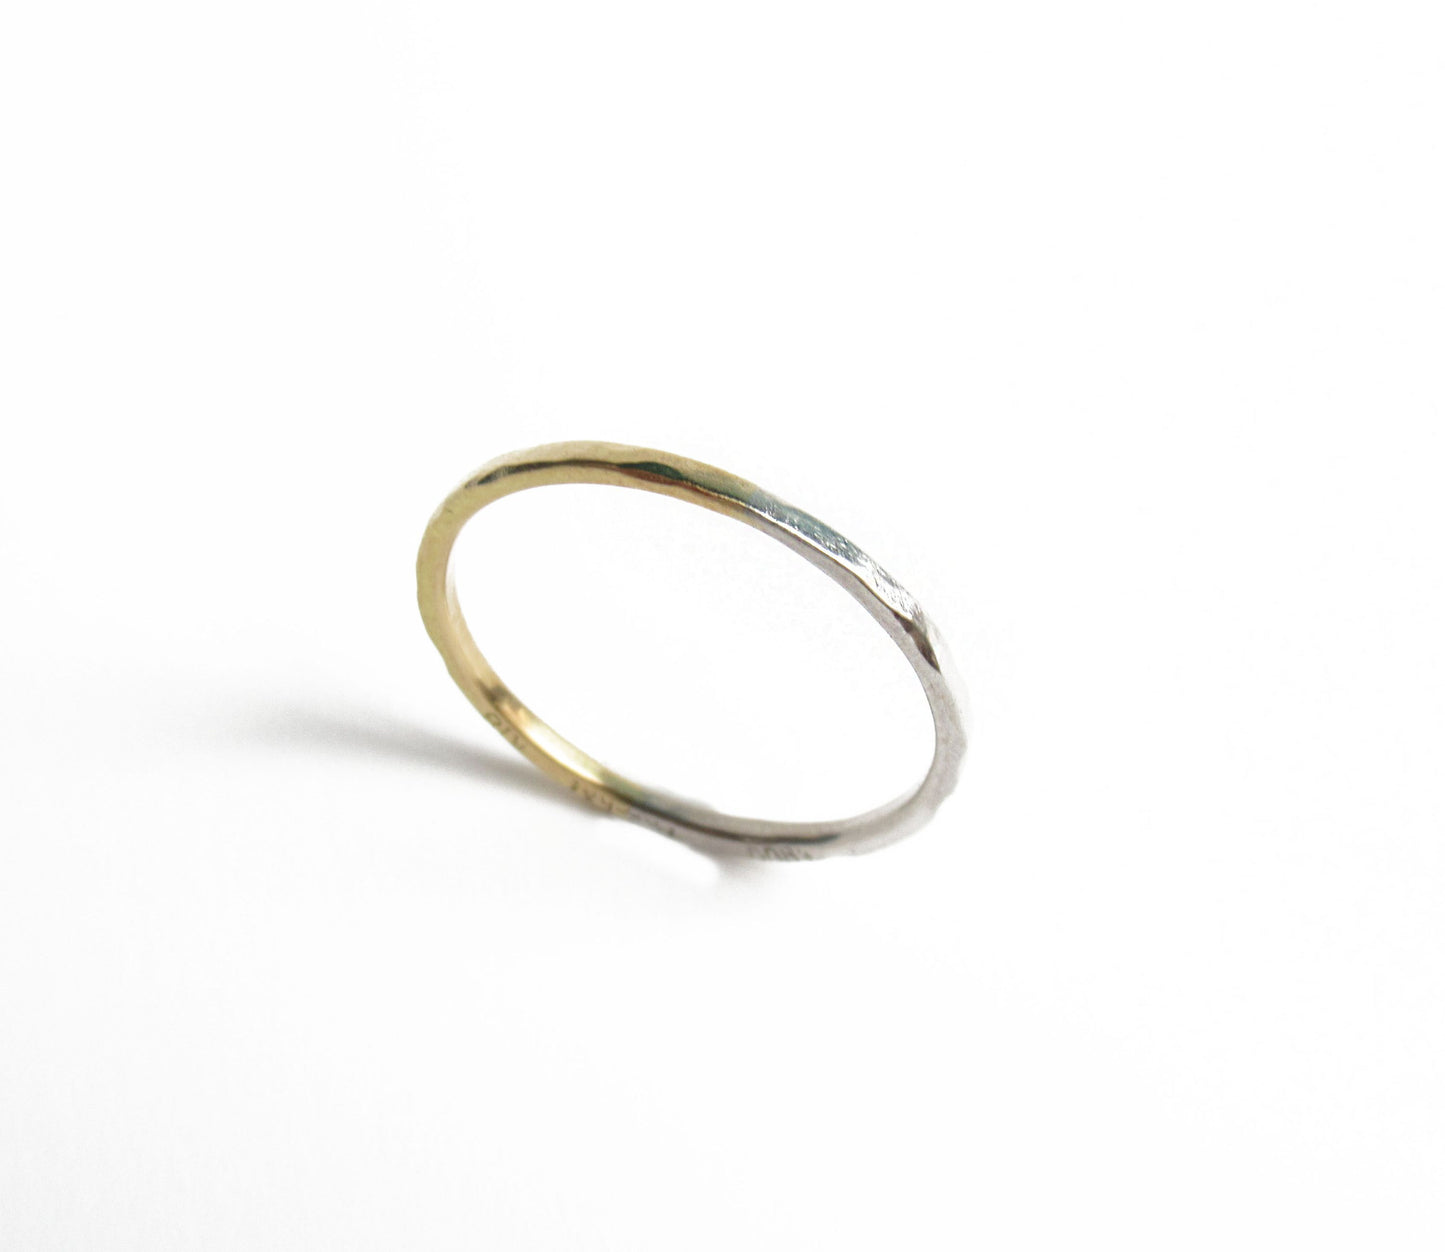 Pt900×K18 half marriage ring / Pt900,K18